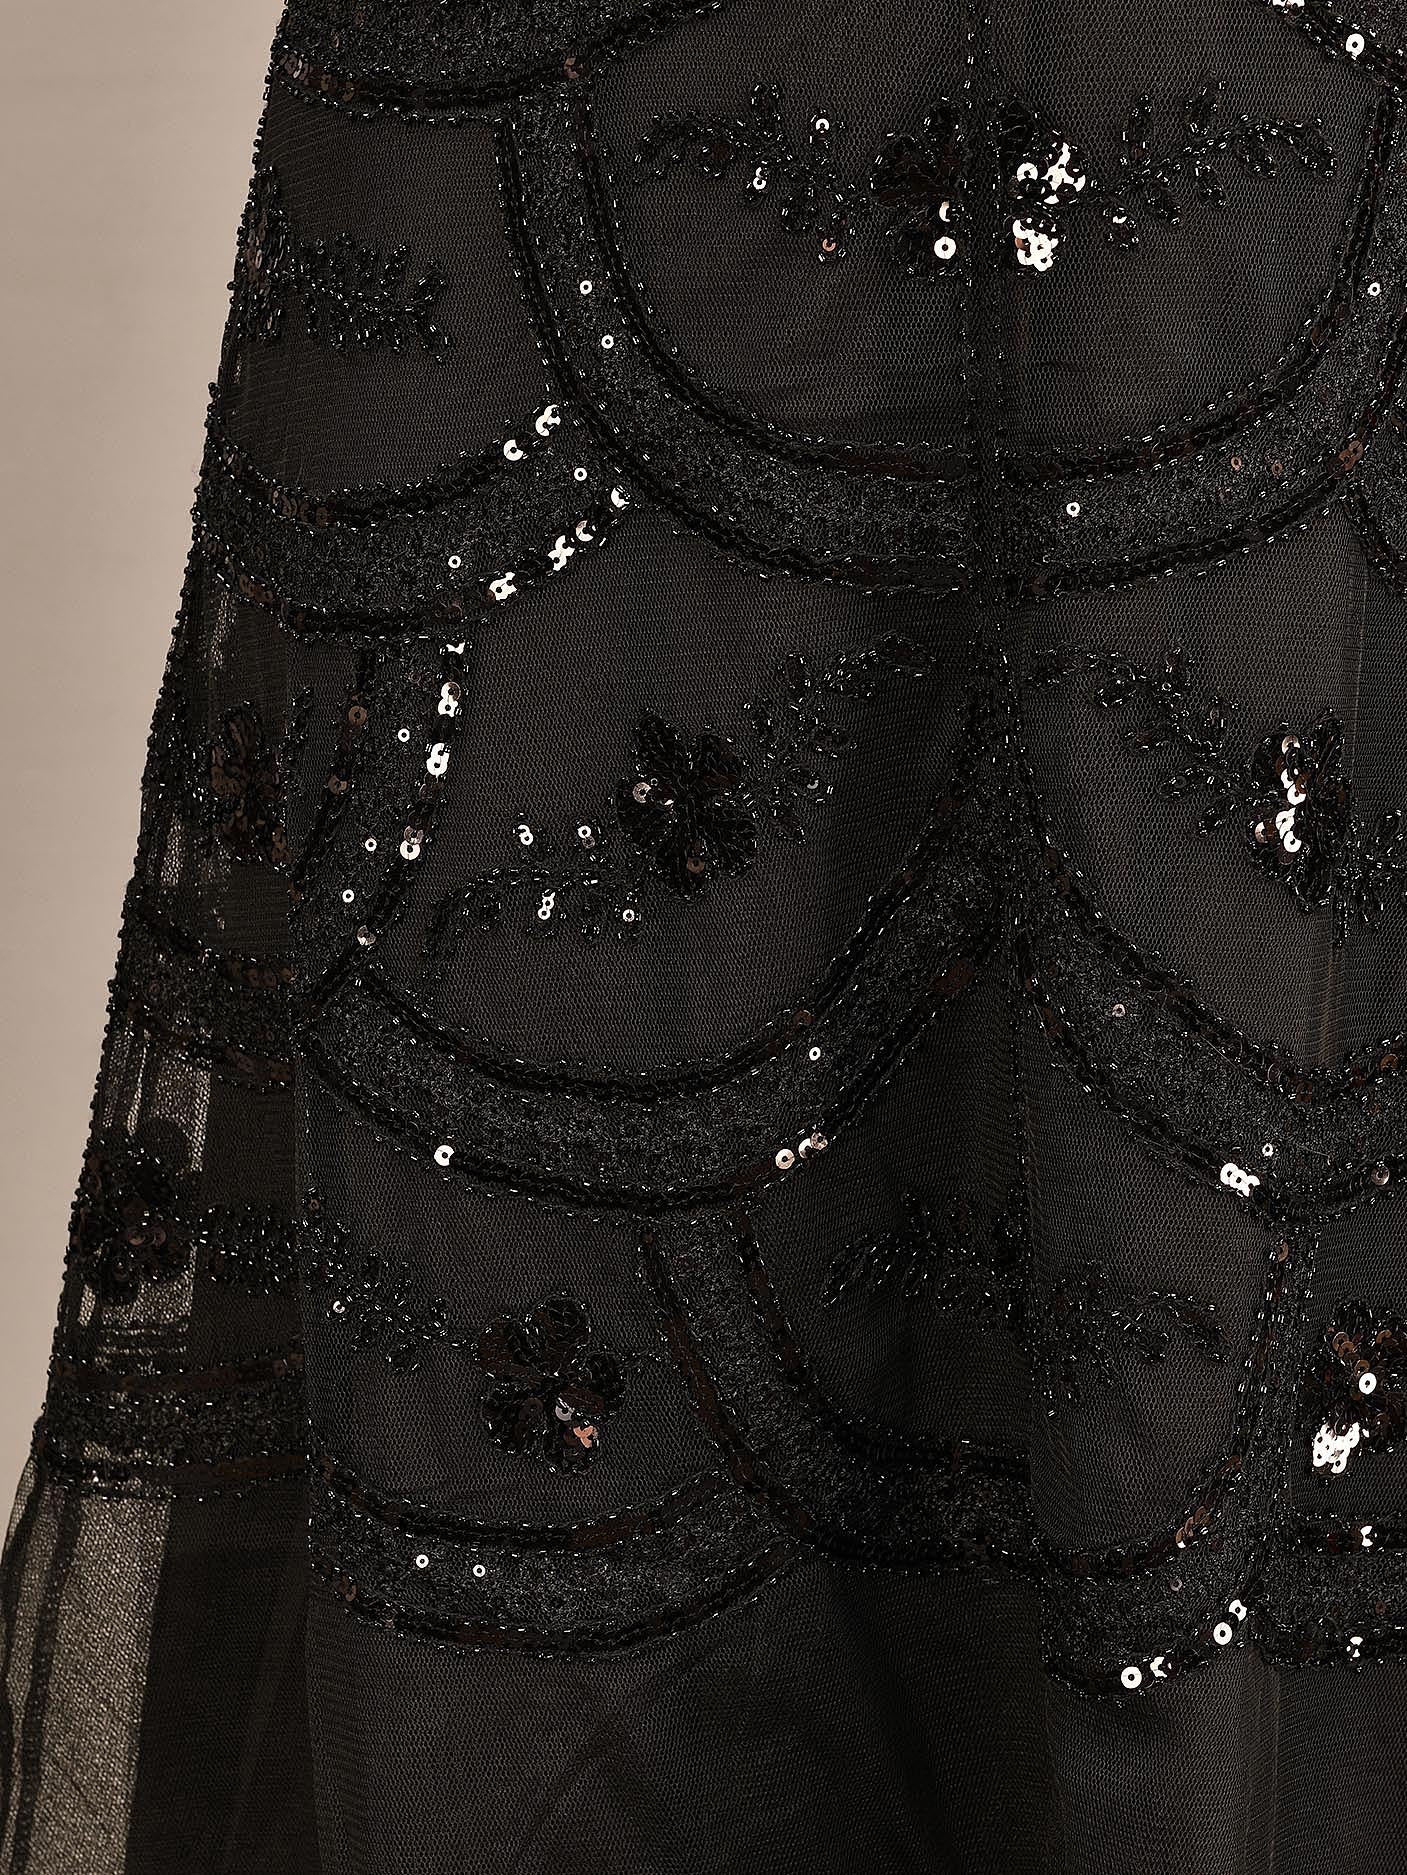 Sequined Net Dress